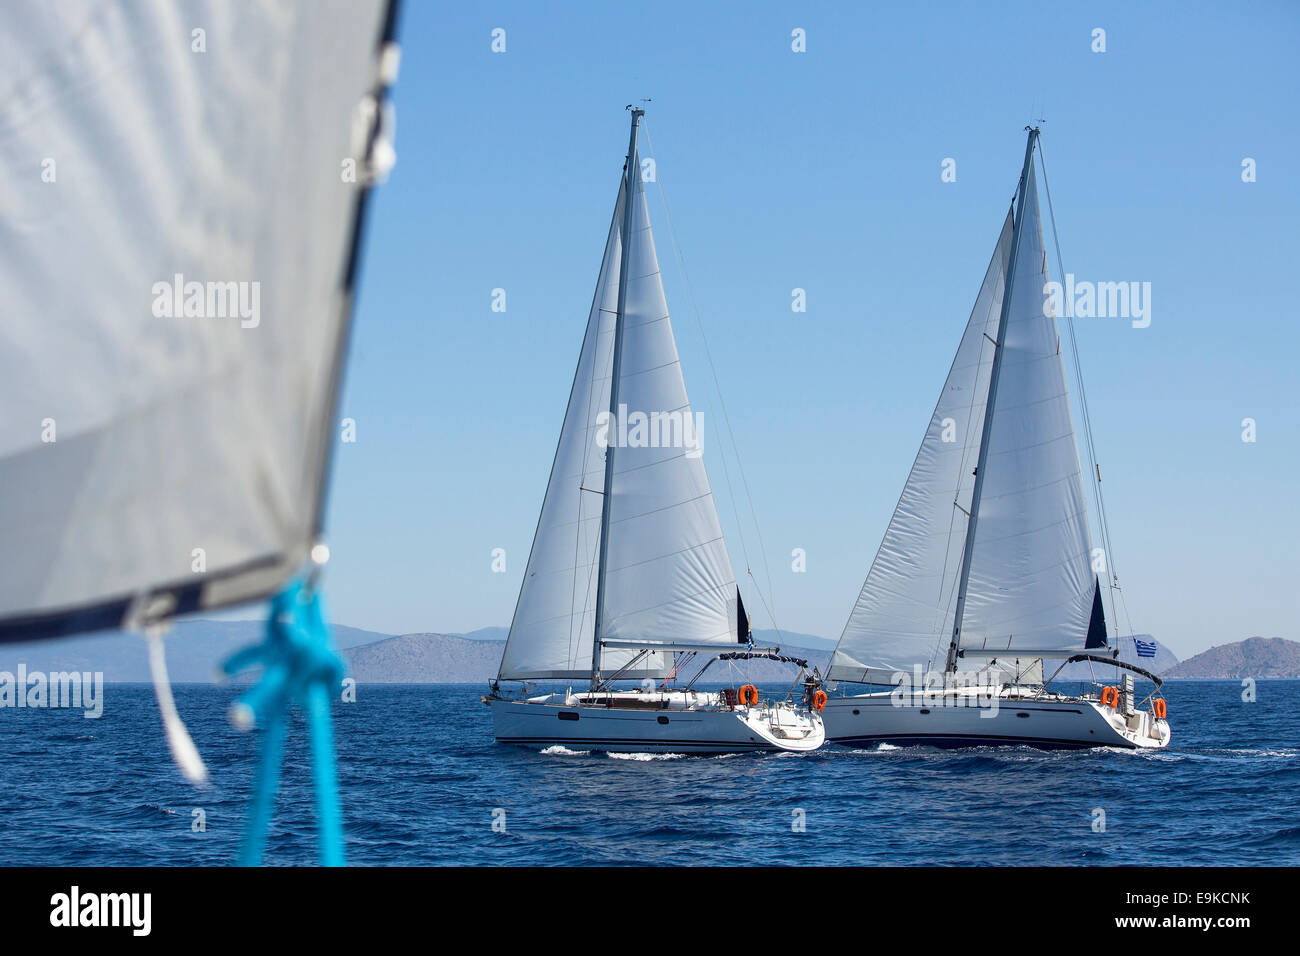 Segelboote Race Regatta des Meeres. Segeln, Luxus-Yachten. Stockfoto